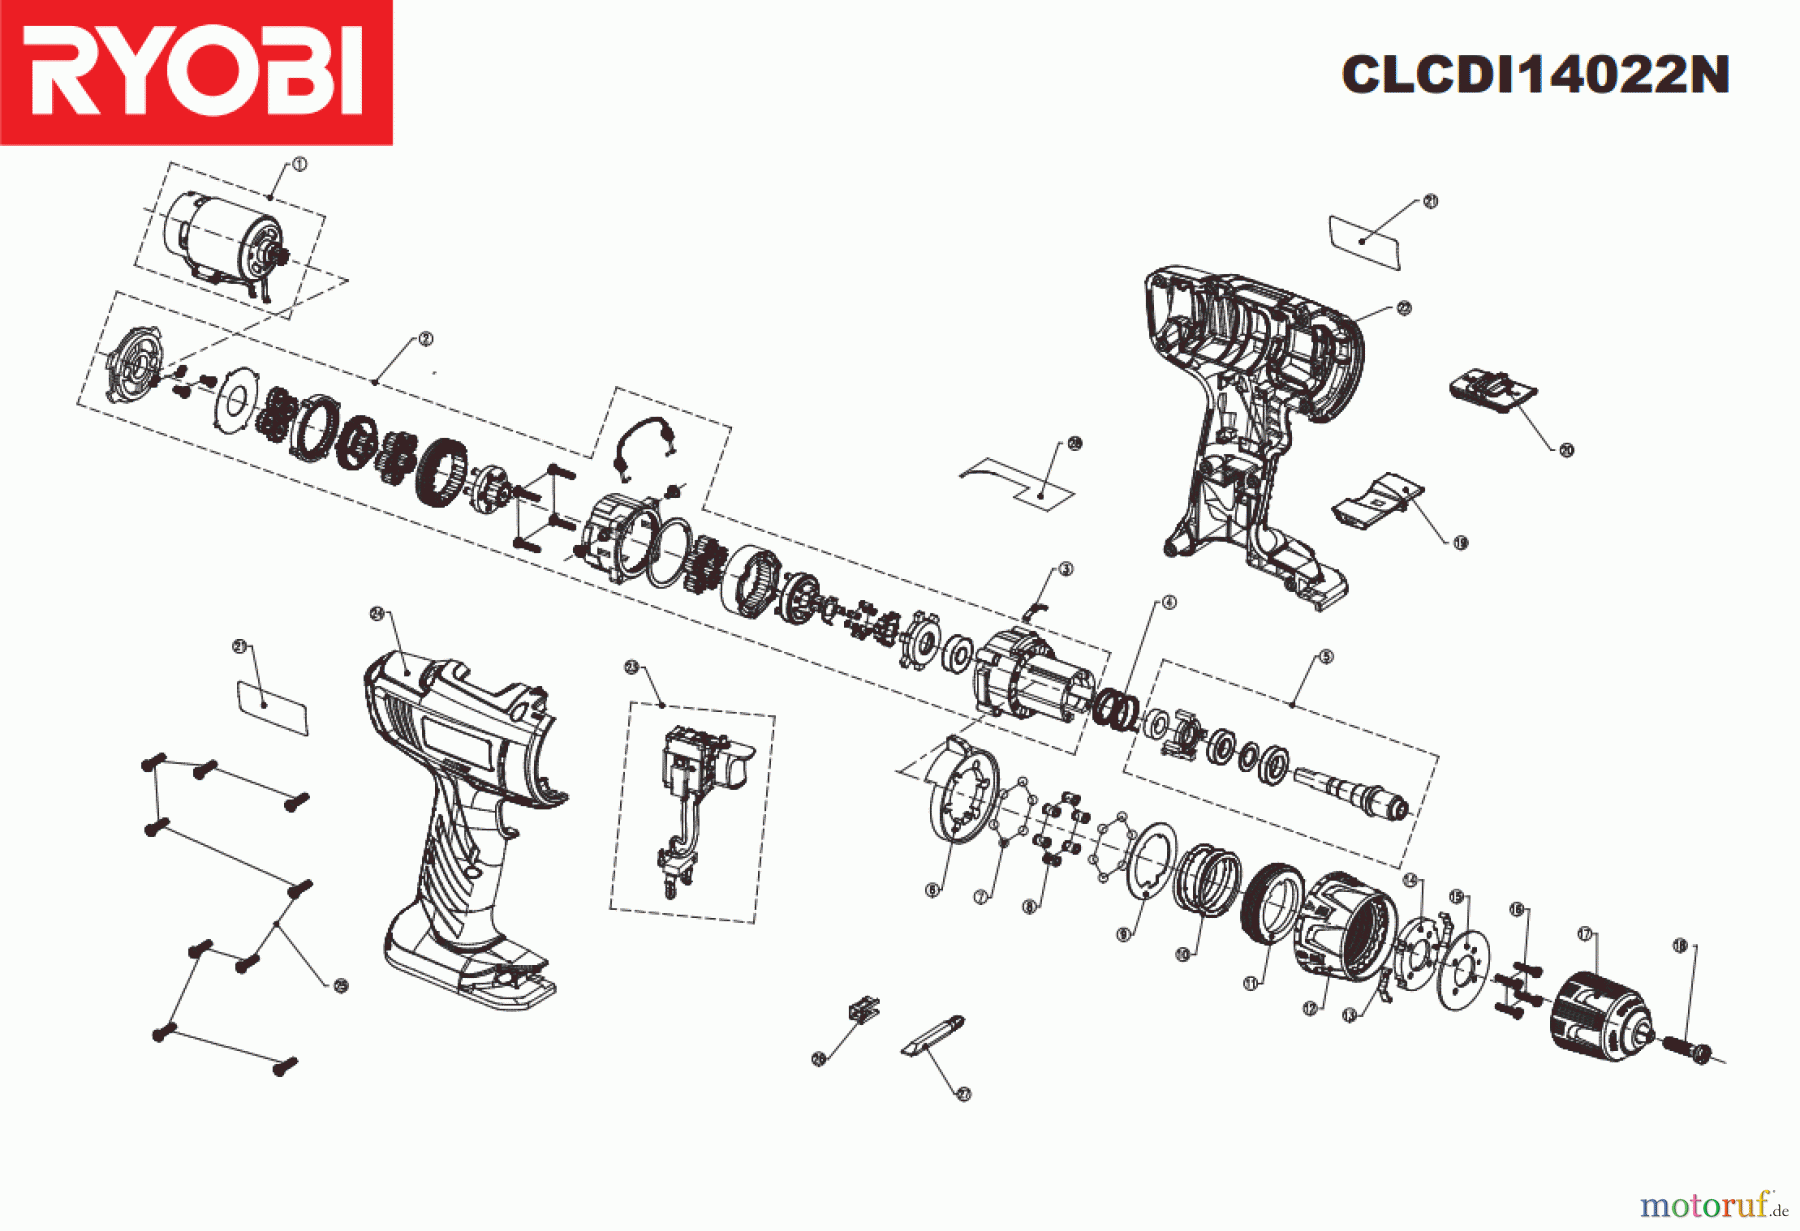  Ryobi (Schlag-)Bohrschrauber Bohrschrauber mit Schlagbohrfunktion CLCDI14022N  Seite 1